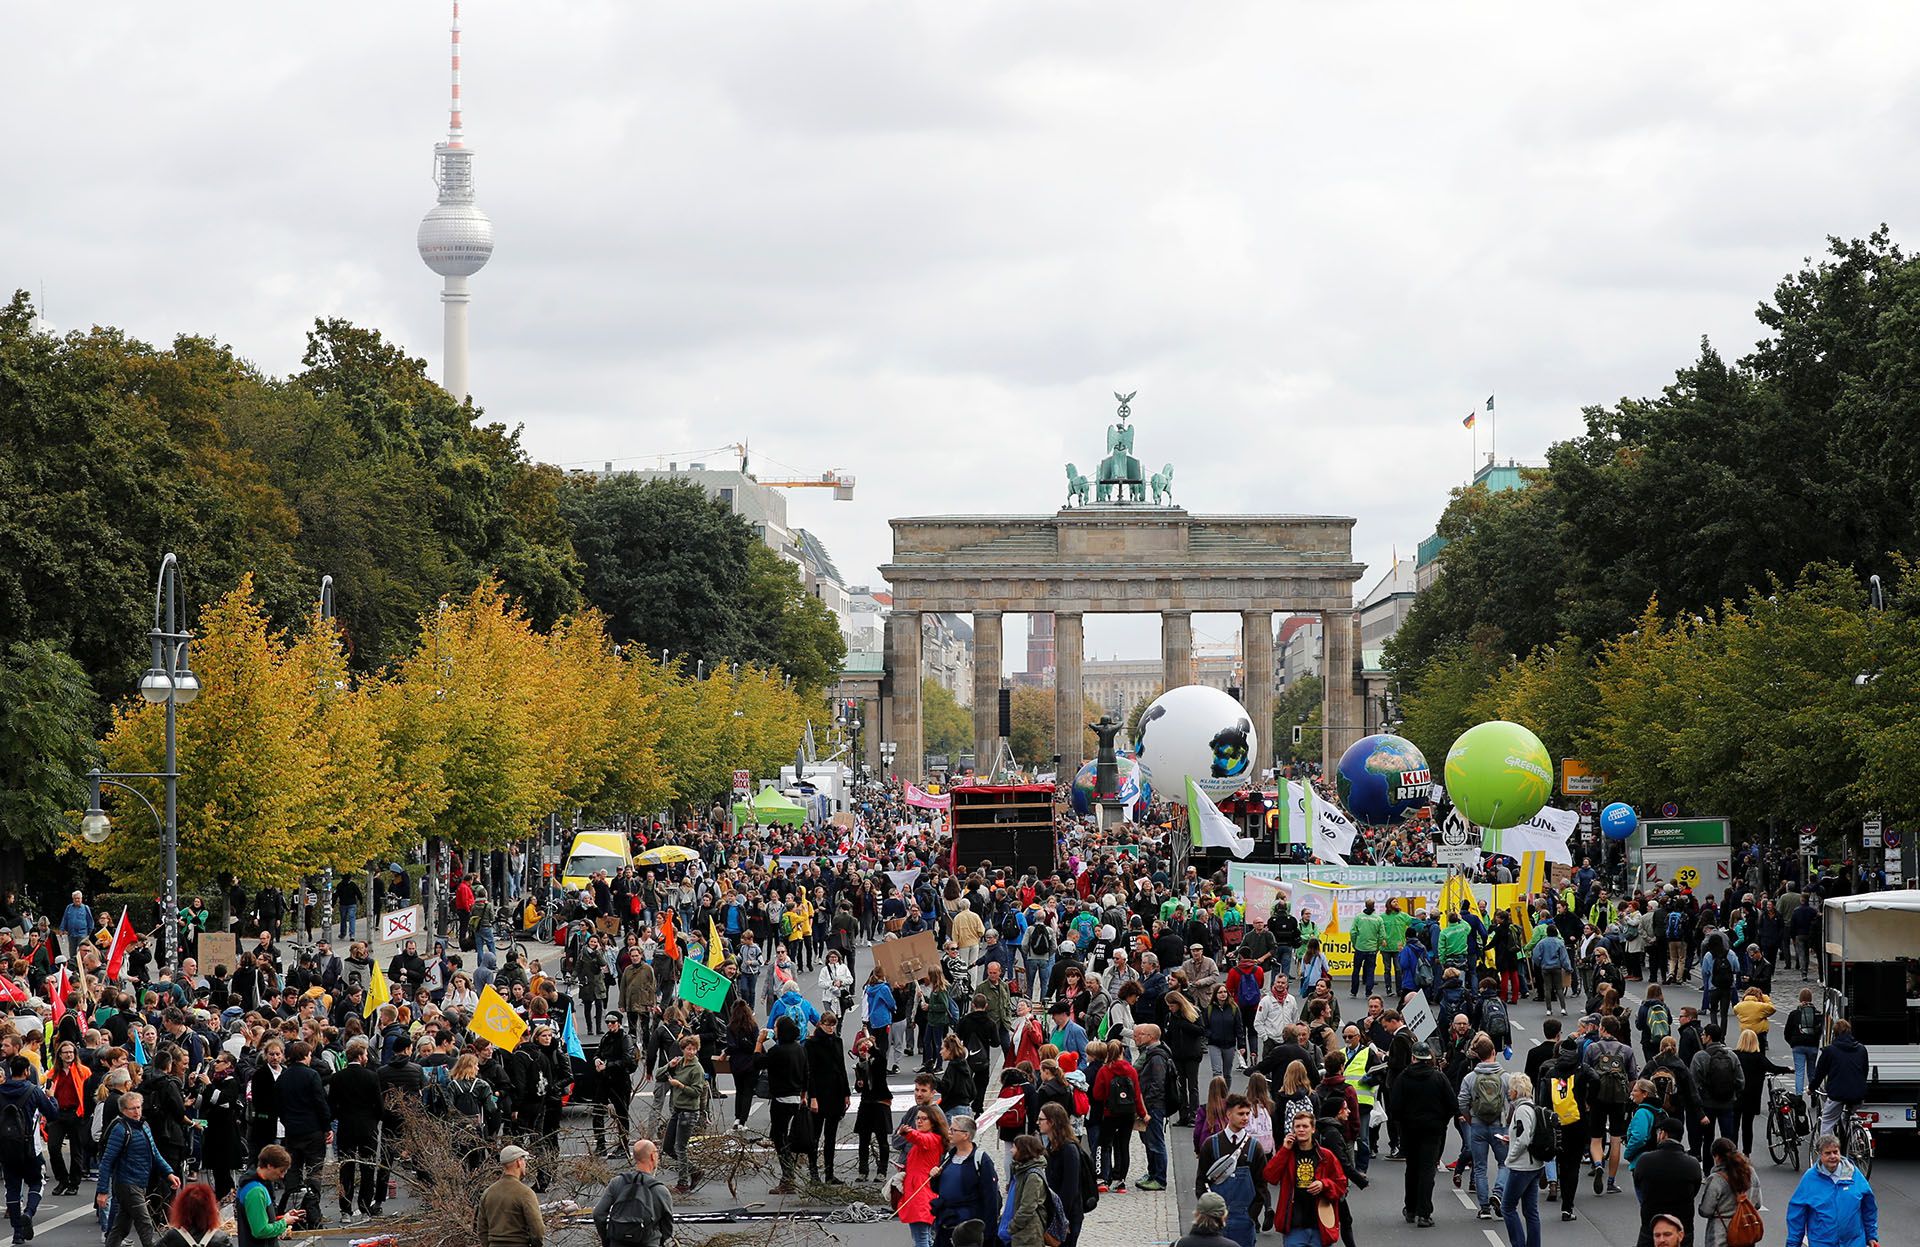 La gente se reúne frente a la Puerta de Brandenburgo para manifestarse (REUTERS/Fabrizio Bensch)